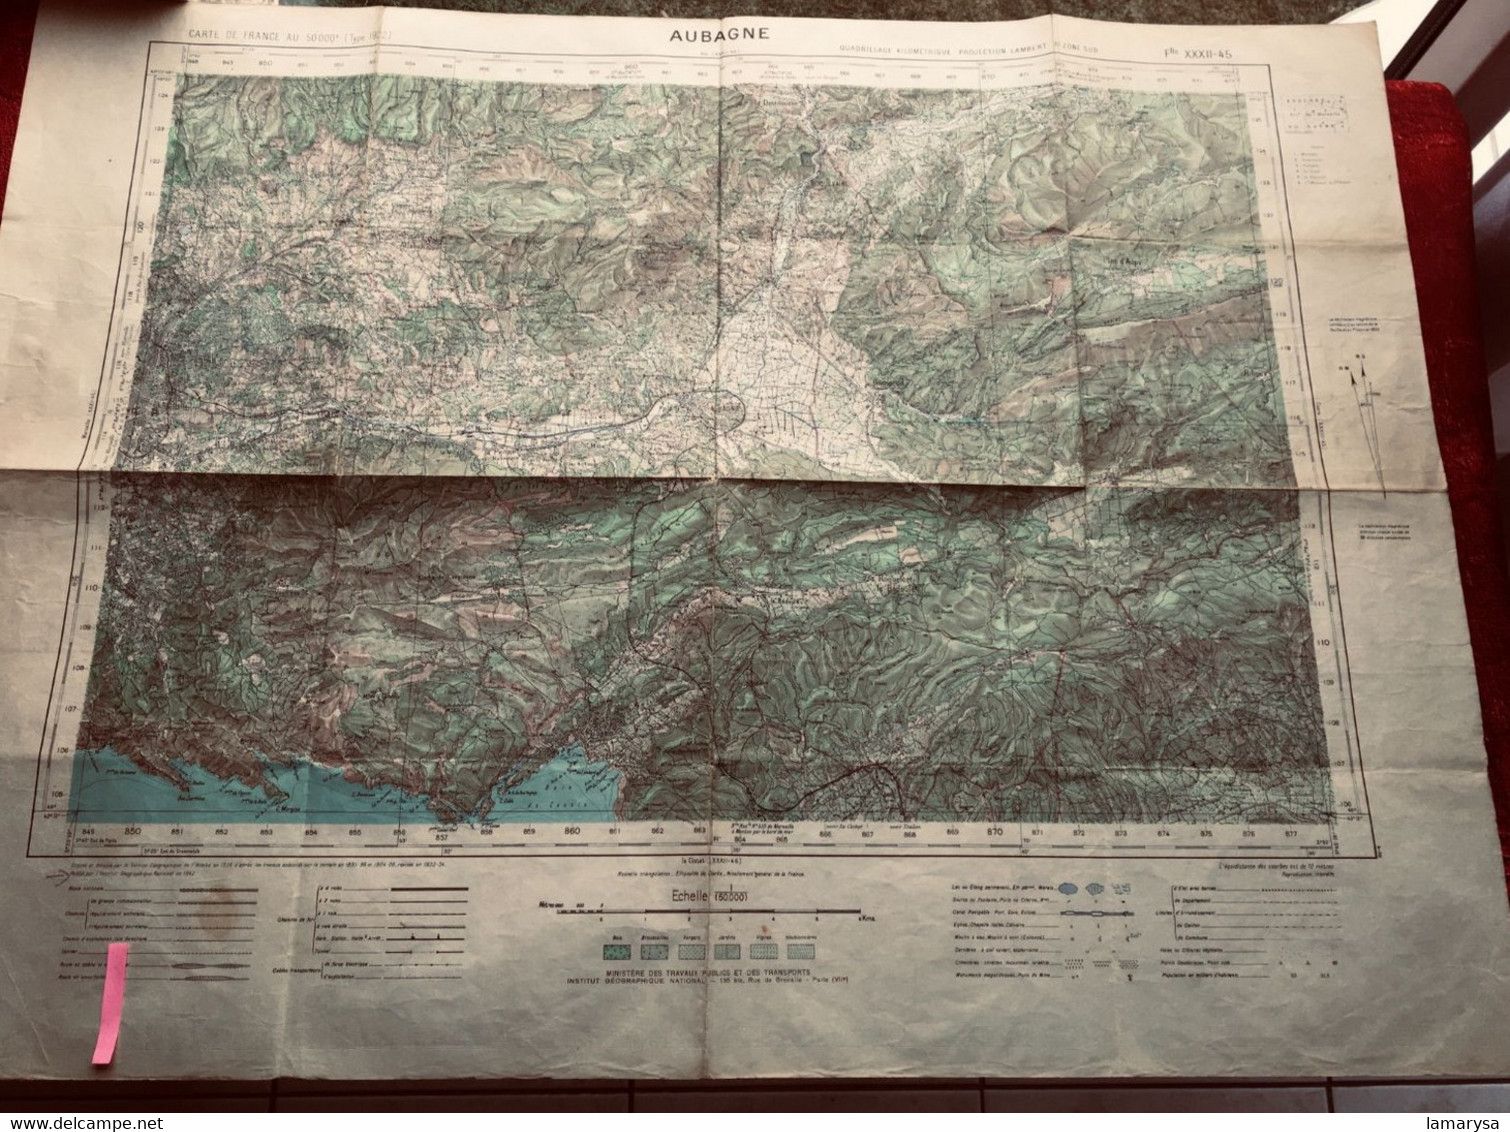 WW2-1942 AUBAGNE Carte France Géographique Armée Topographique Type 1922 Quadrillage Kilomètrque Lambert Zone Sud - Cartes Topographiques